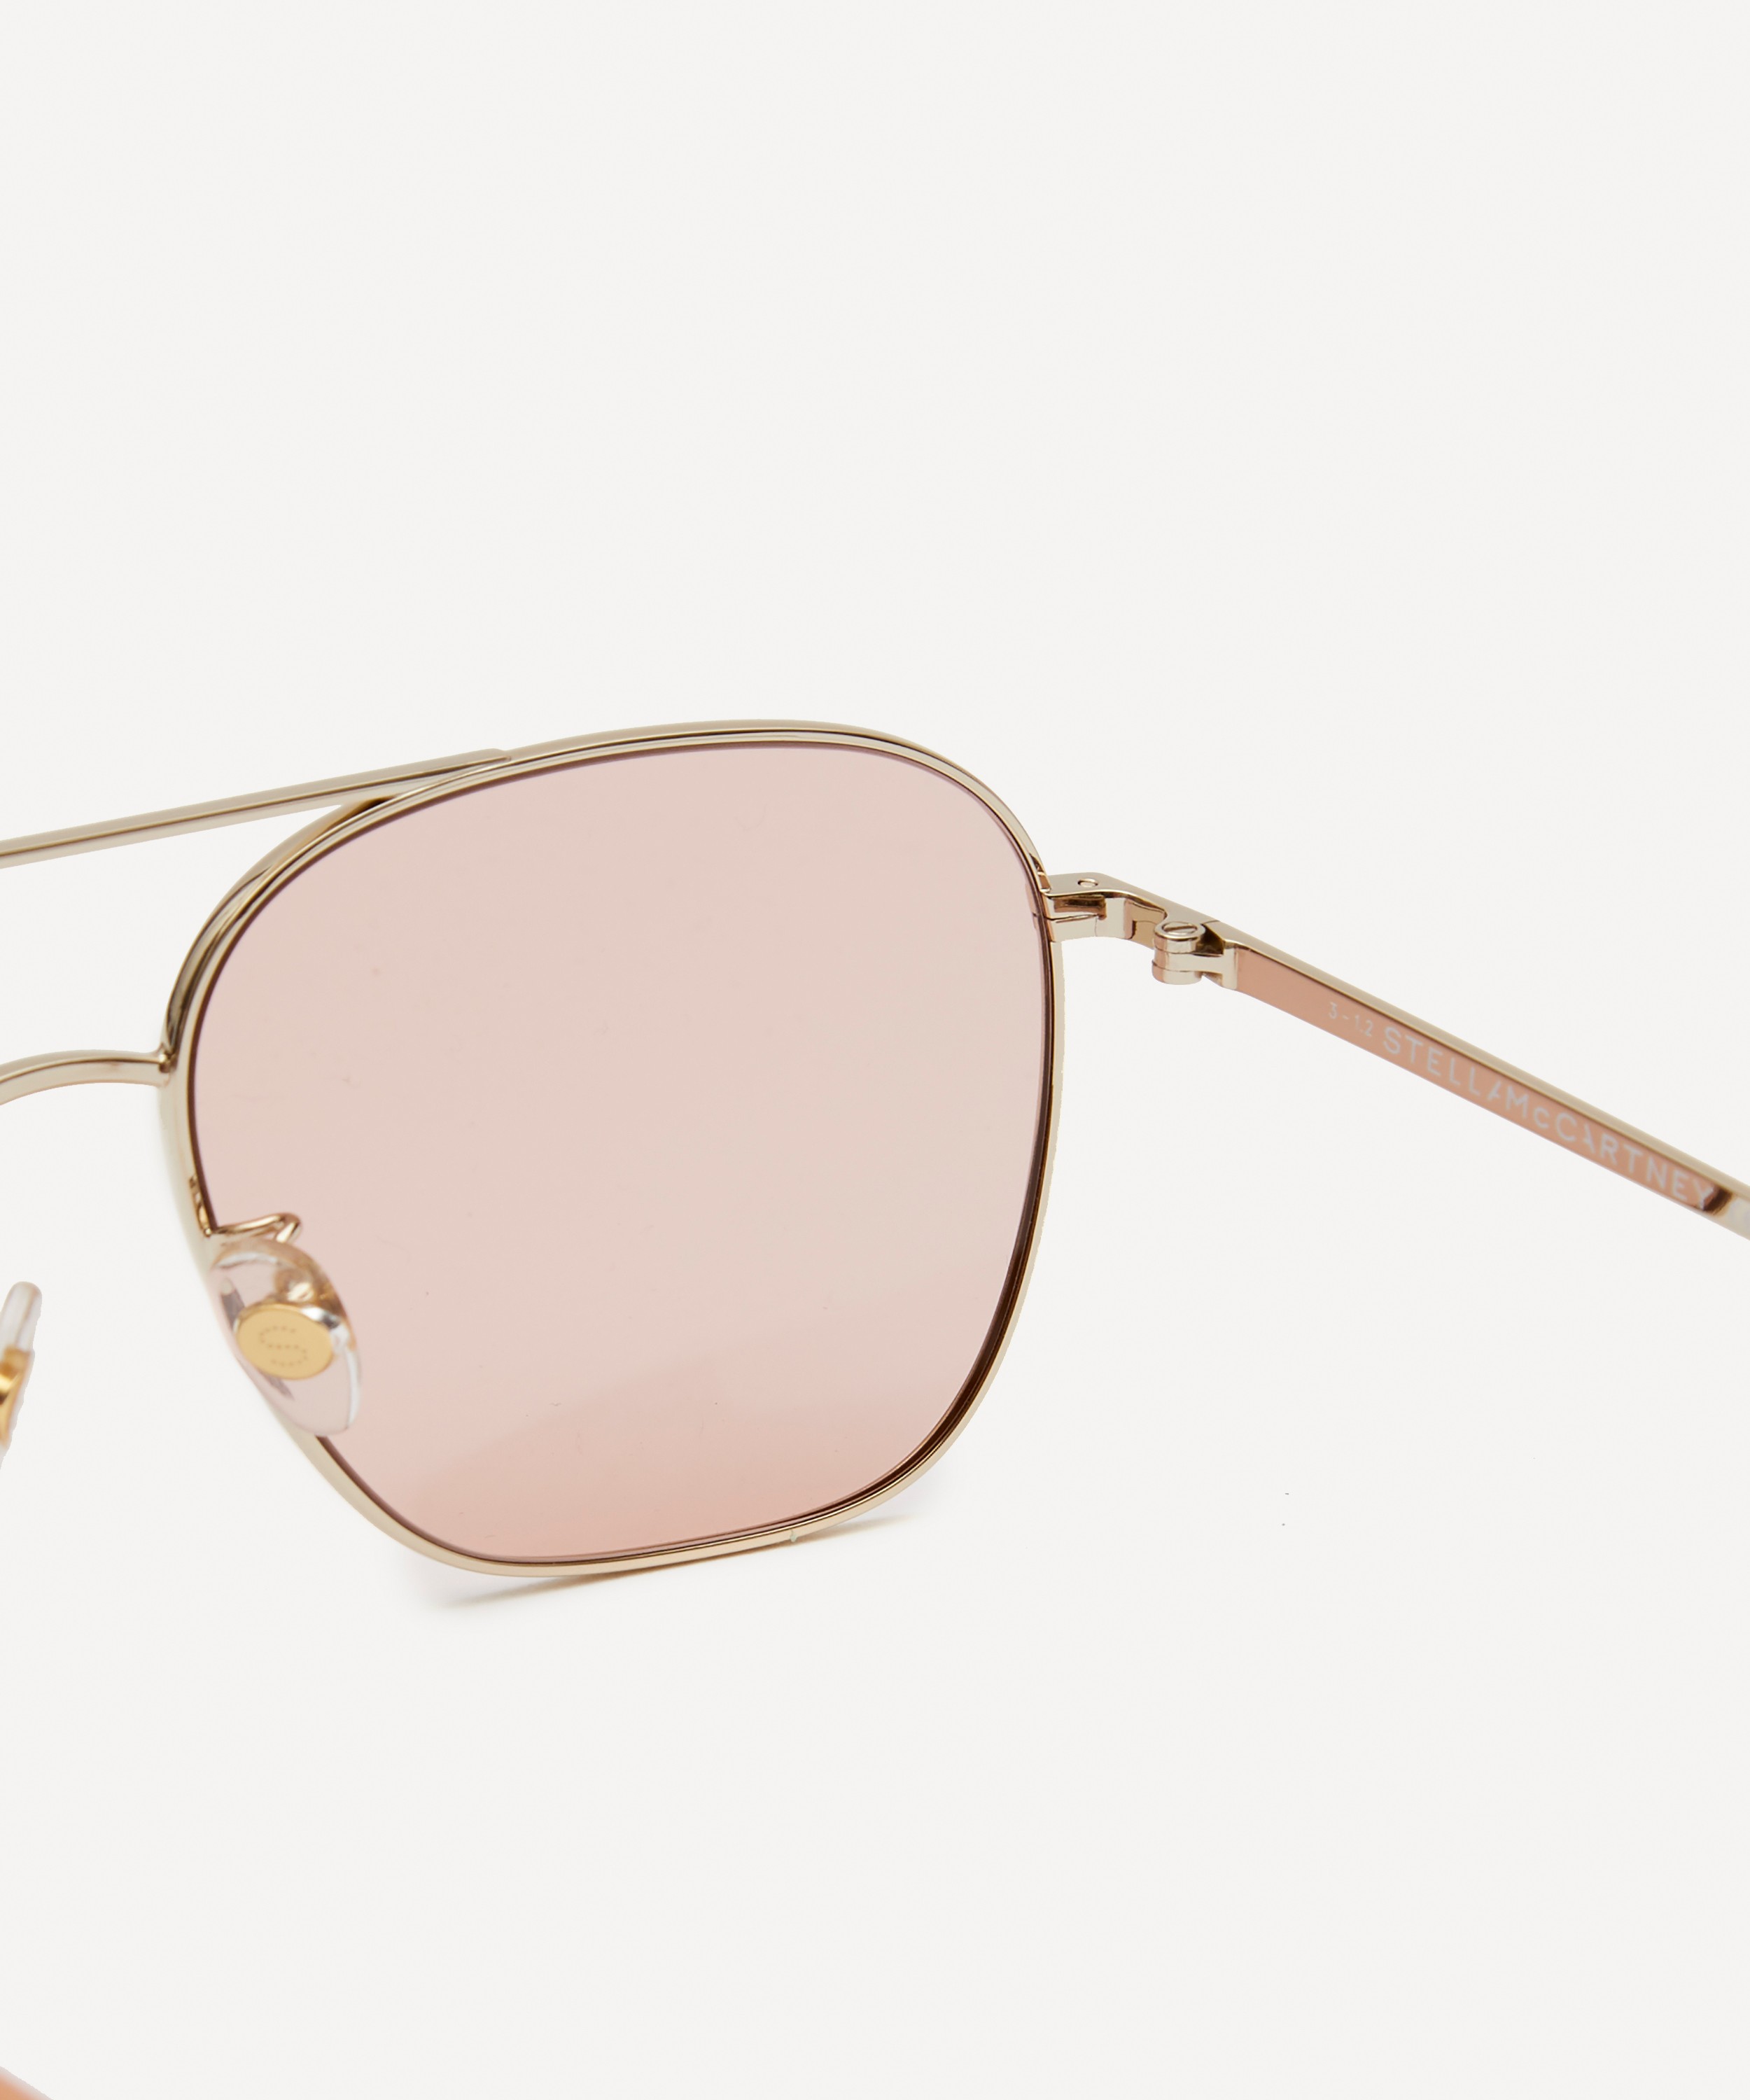 Embellished aviator-style gold-tone sunglasses